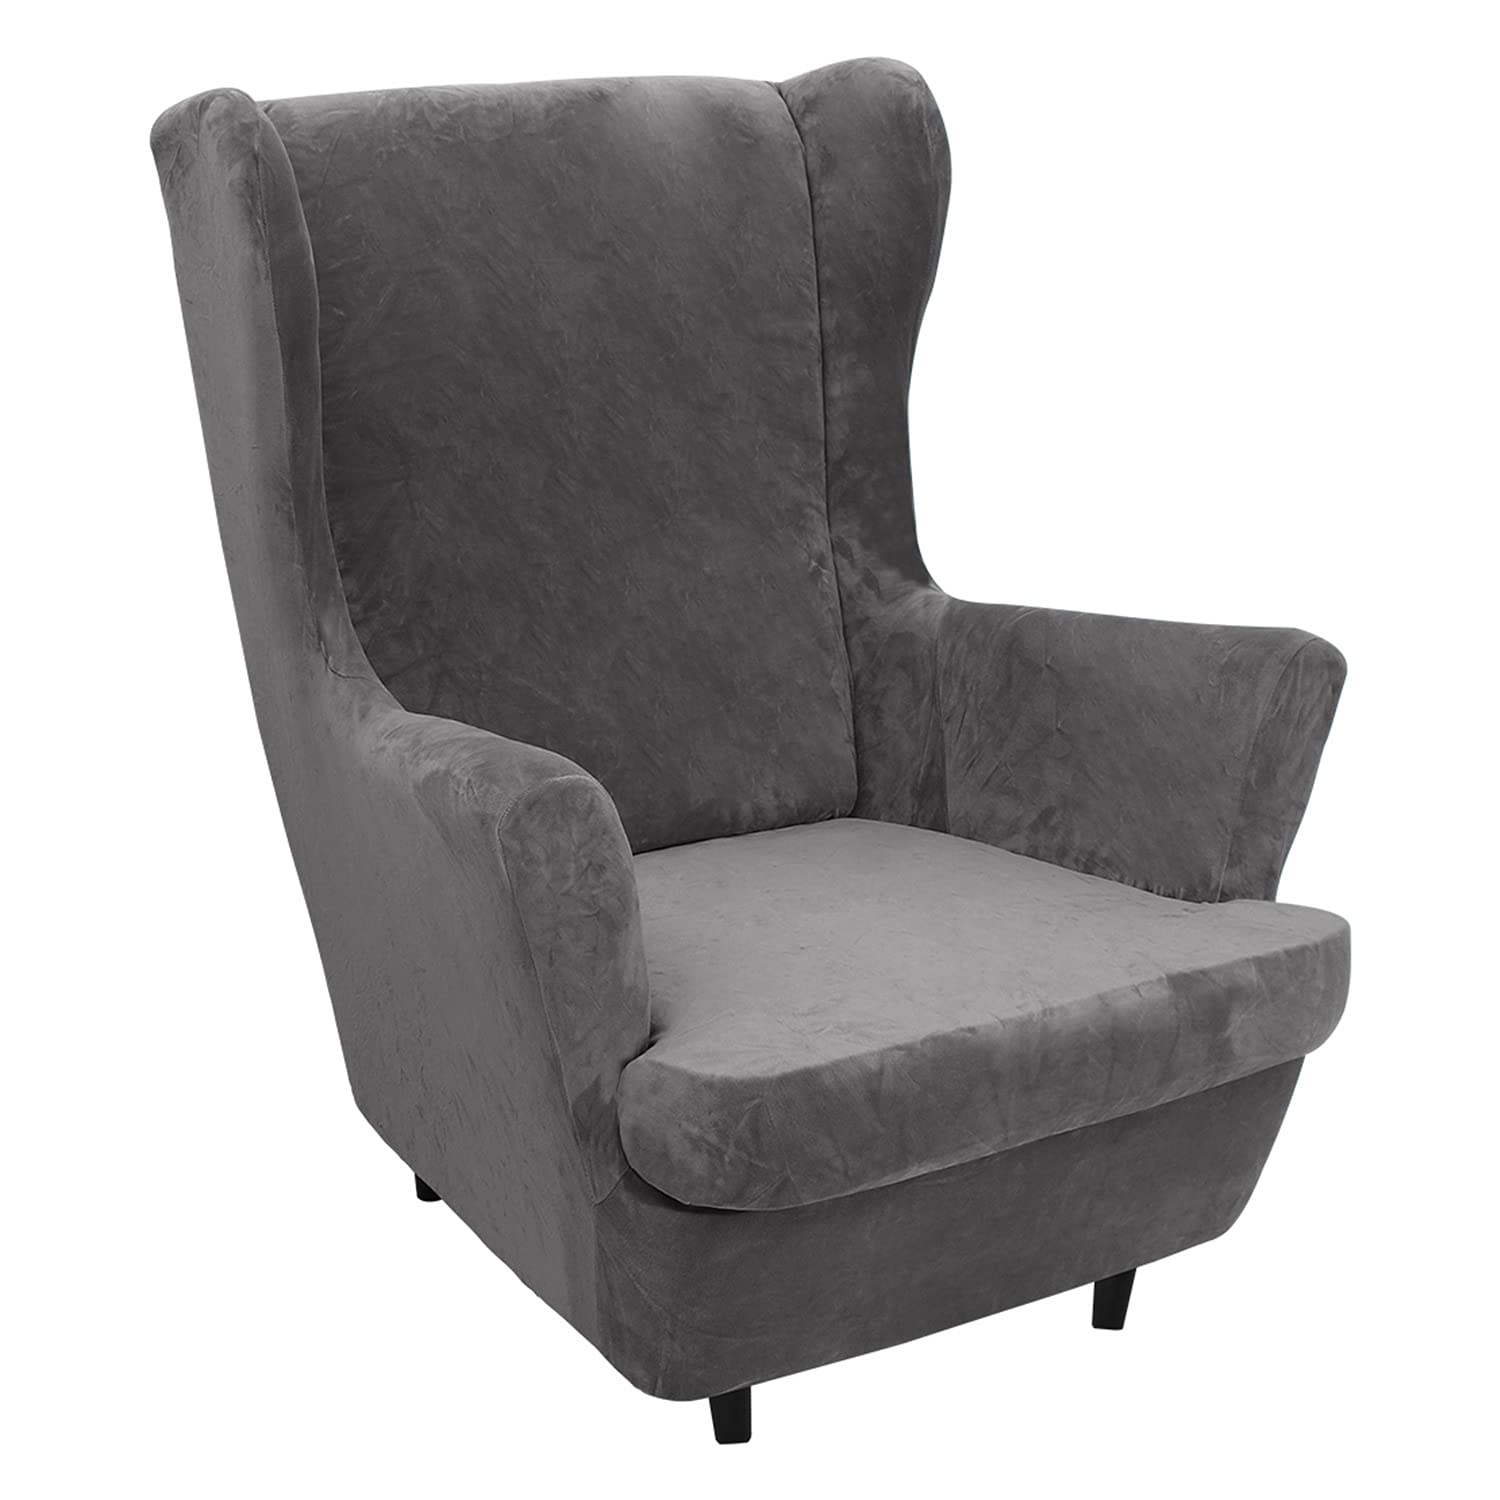 2 Stück Samt Plüsch Stretch Sesselbezug Ohrensessel Schonbezug Ohrensesselbezuga Möbelbezüge Für Sessel Stühle Wohnzimmer (Gray)